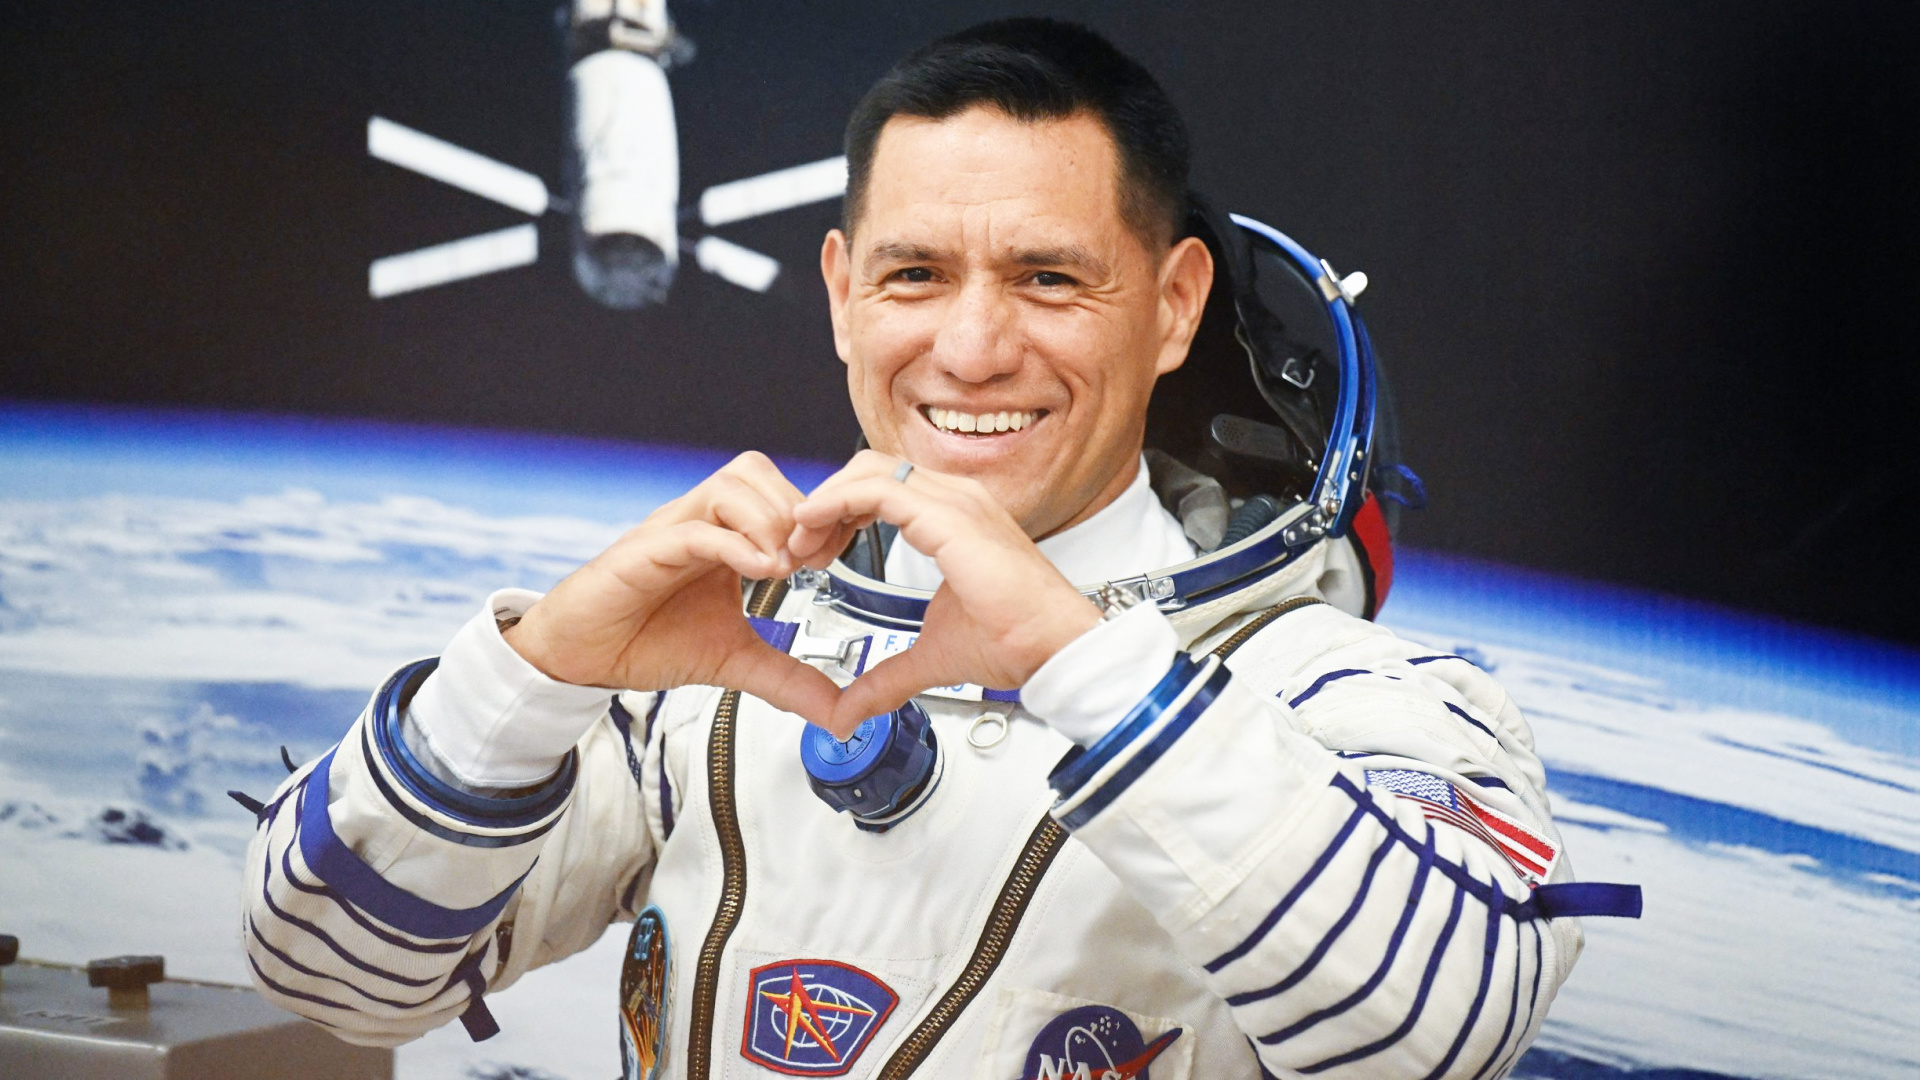 Après des mois coincé dans l'espace, l'astronaute Frank Rubio rentre enfin chez lui